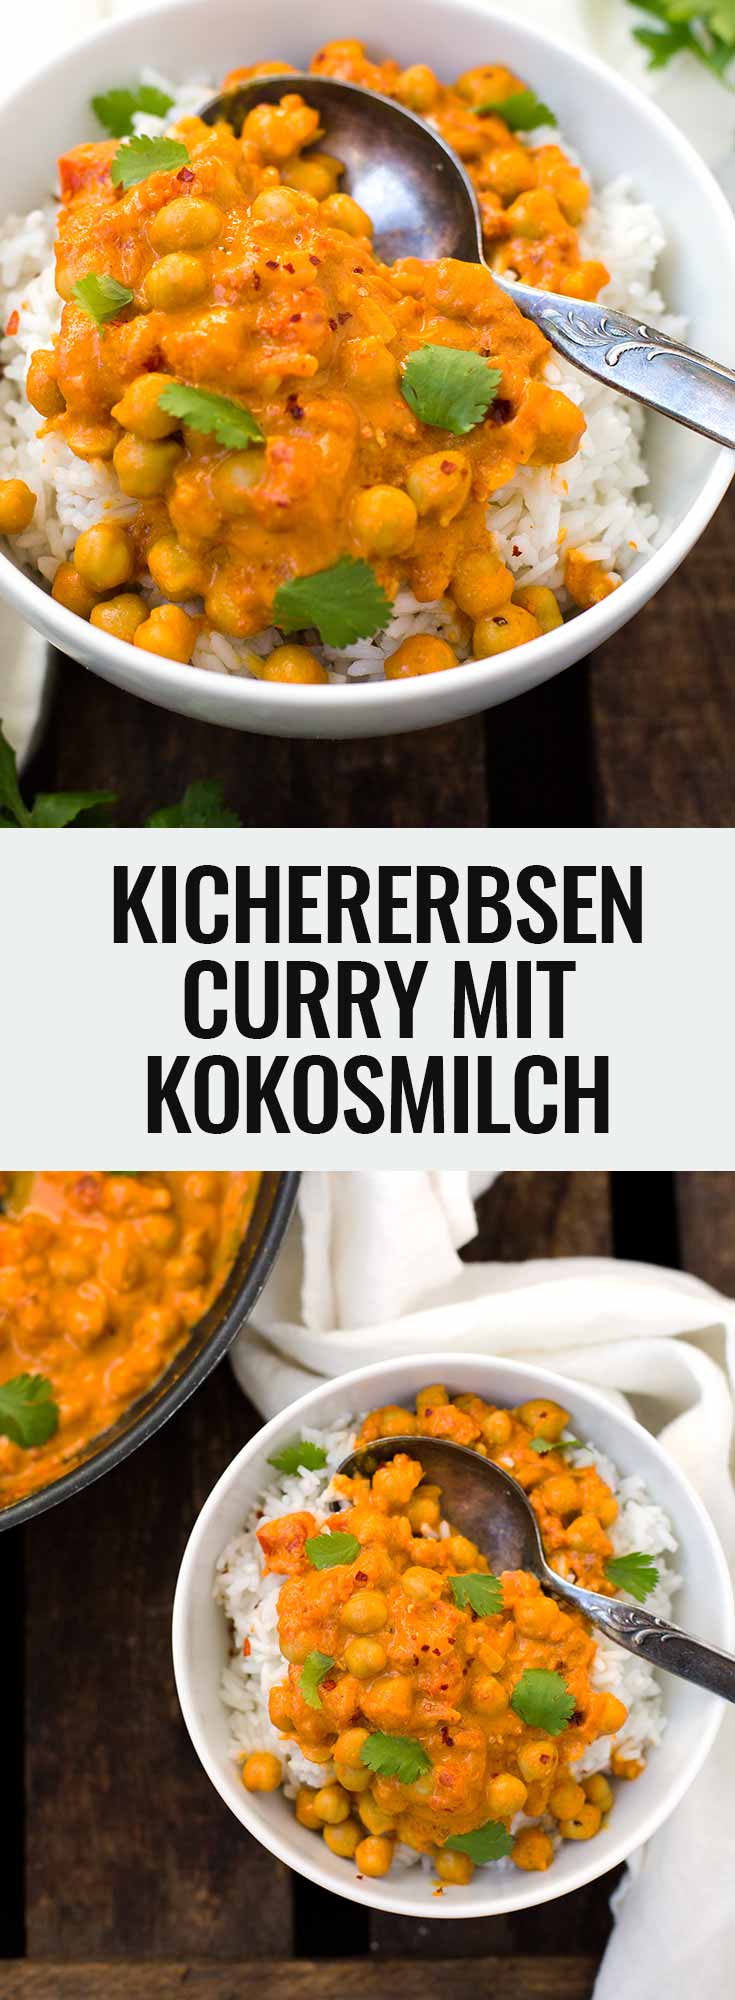 Kichererbsen-Curry mit Kokosmilch. Dieses 30-Minuten Rezept ist schnell, einfach und unglaublich cremig - Kochkarussell.com 